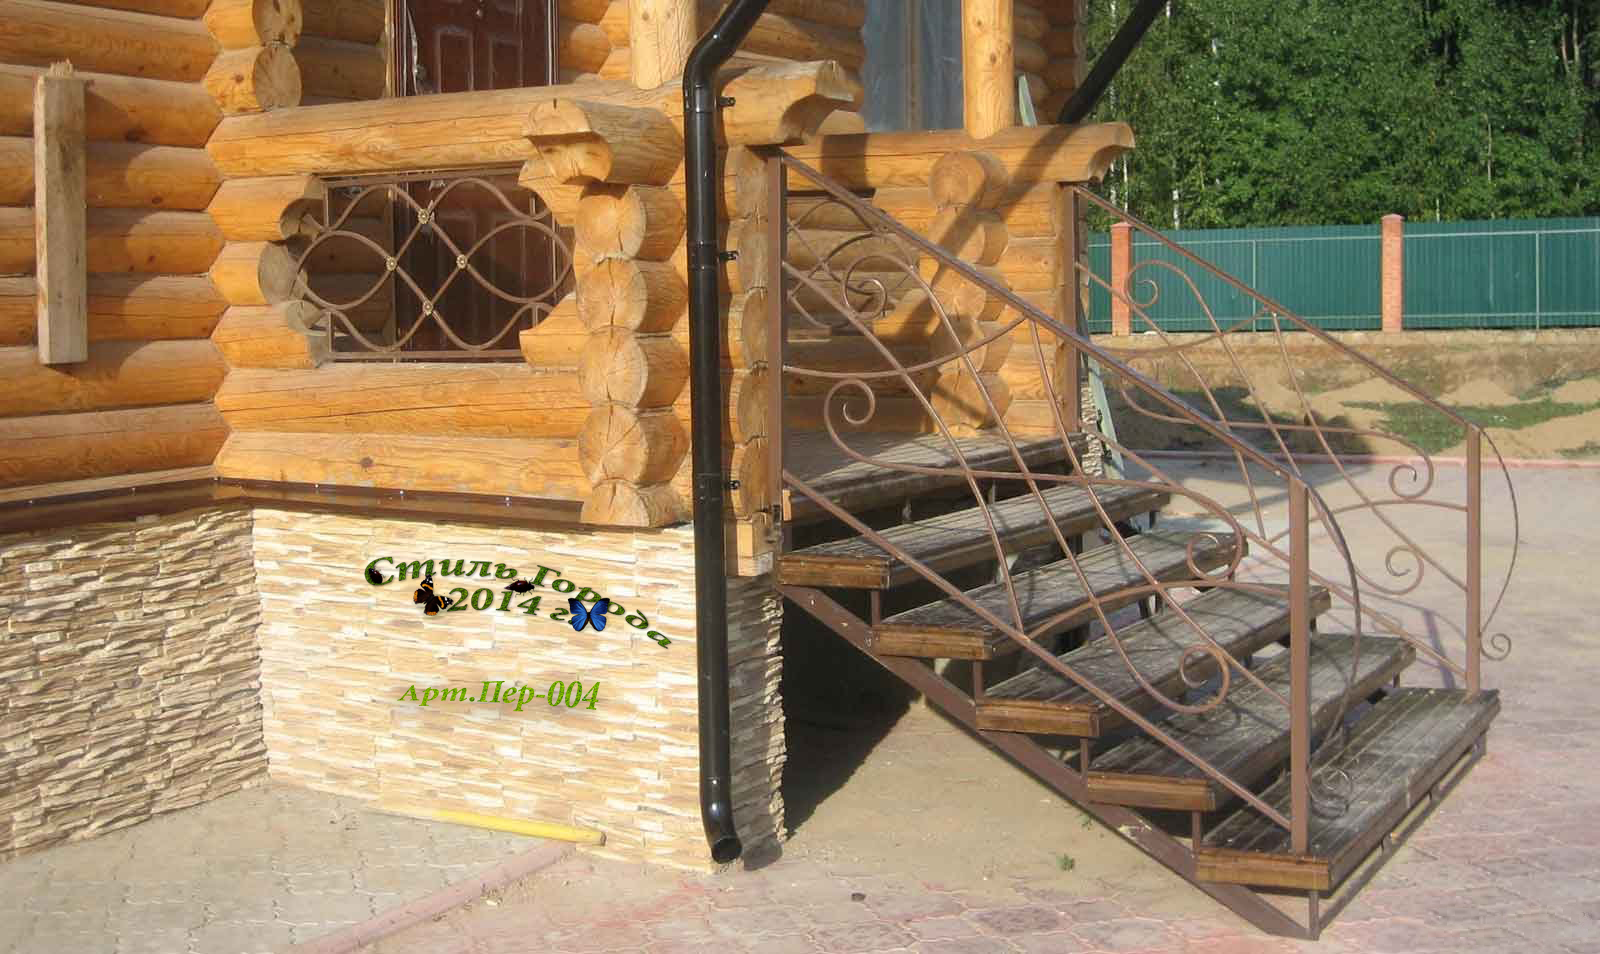 Крыльцо с балясинами: ступеньки для частного кирпичного дома, наружные лестницы для загородного коттеджа, уличные ступени